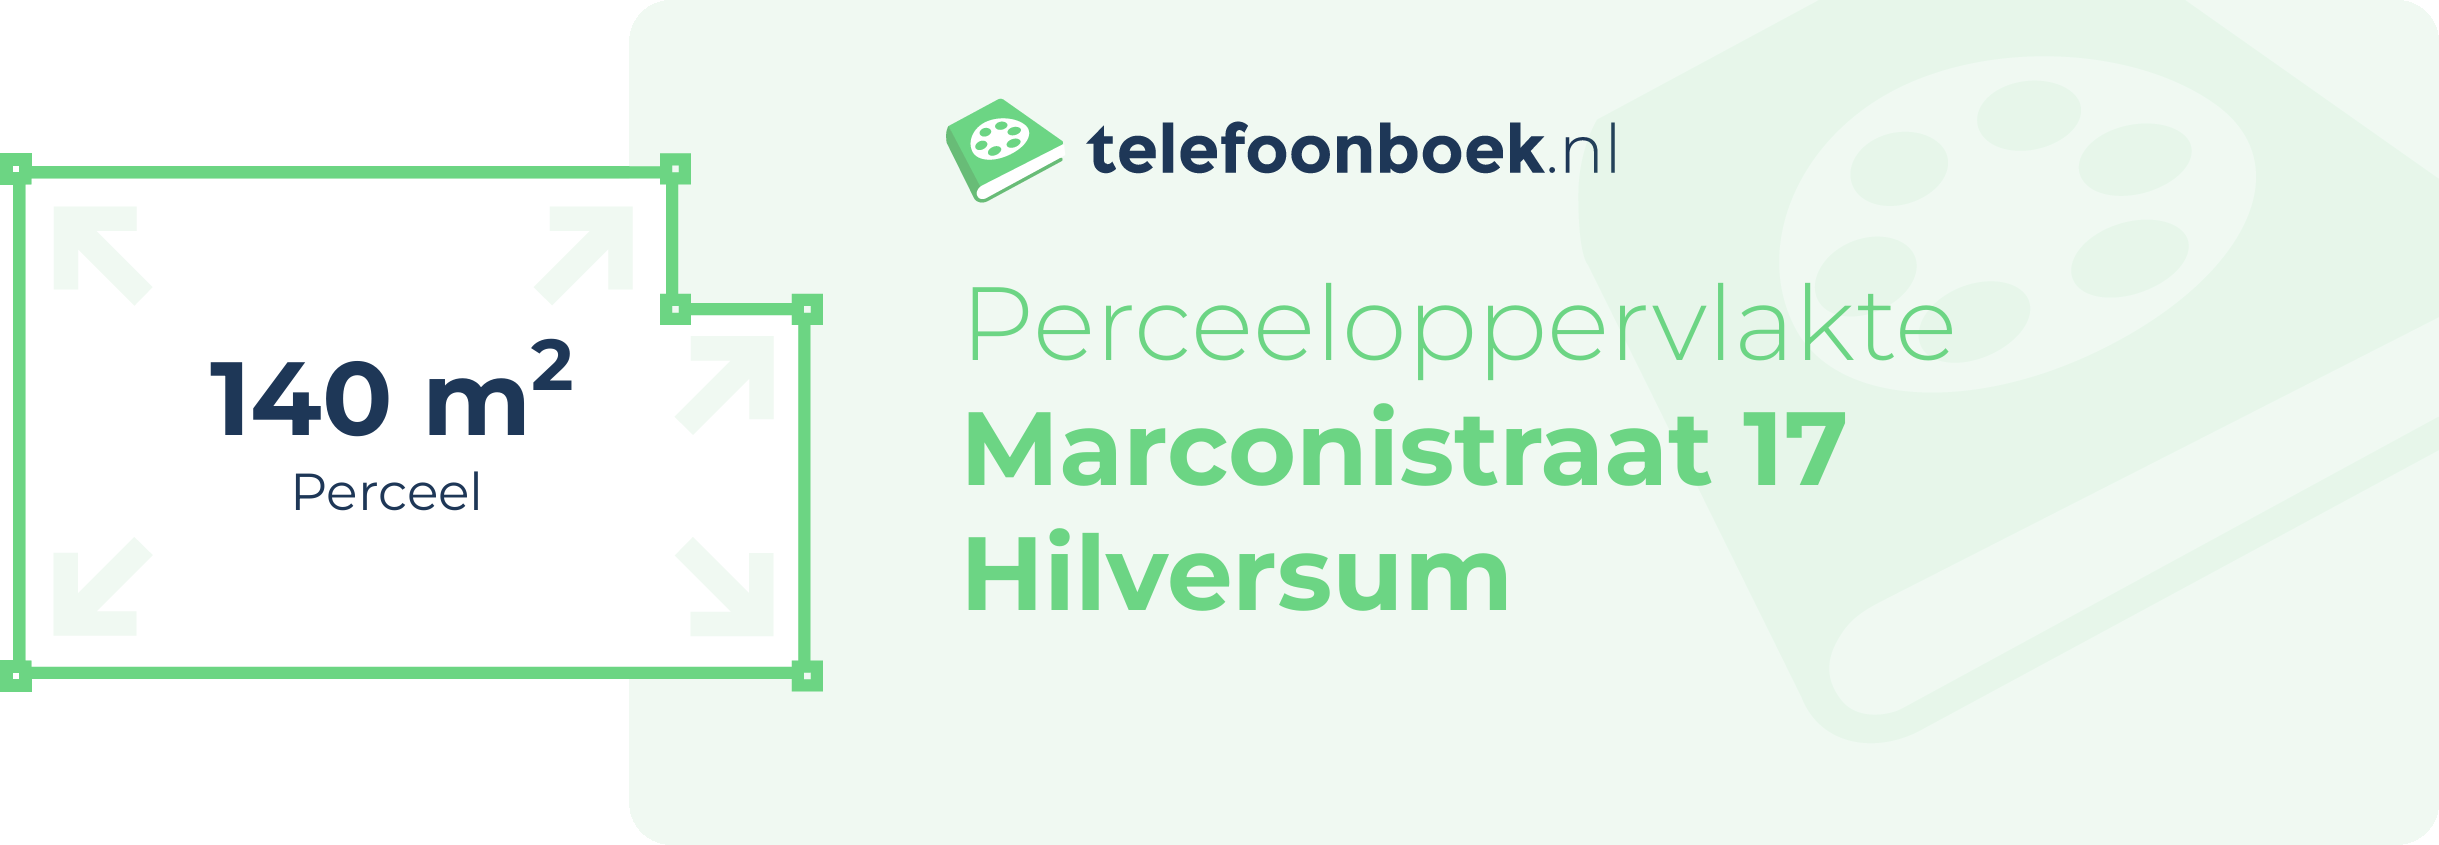 Perceeloppervlakte Marconistraat 17 Hilversum